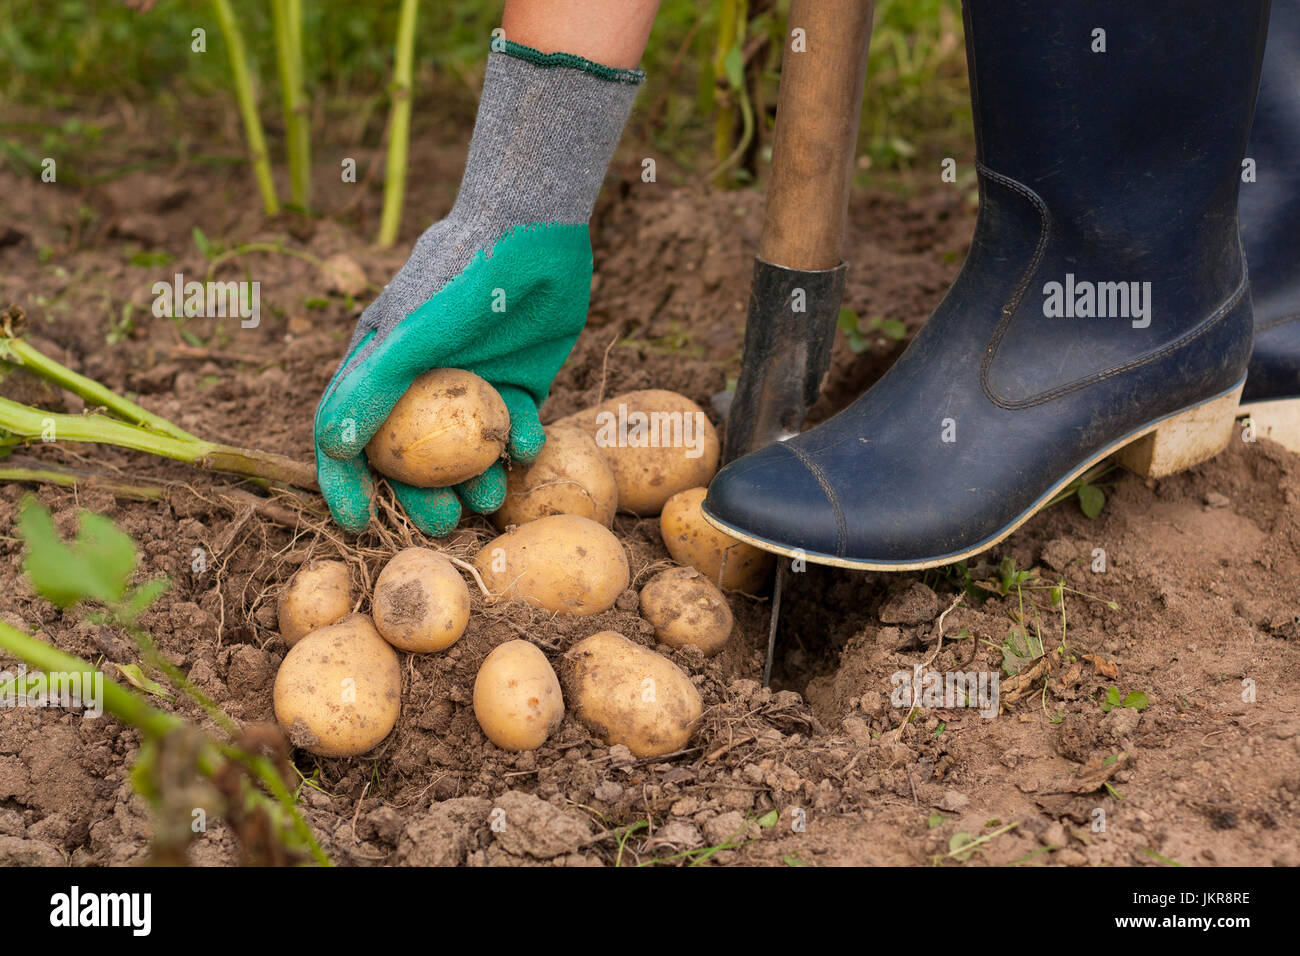 La récolte des pommes. La productrice de pommes de terre fraîches tenir dans sa main près du sol. La pomme de terre fraîche. Moment de la récolte, de la saison. Banque D'Images